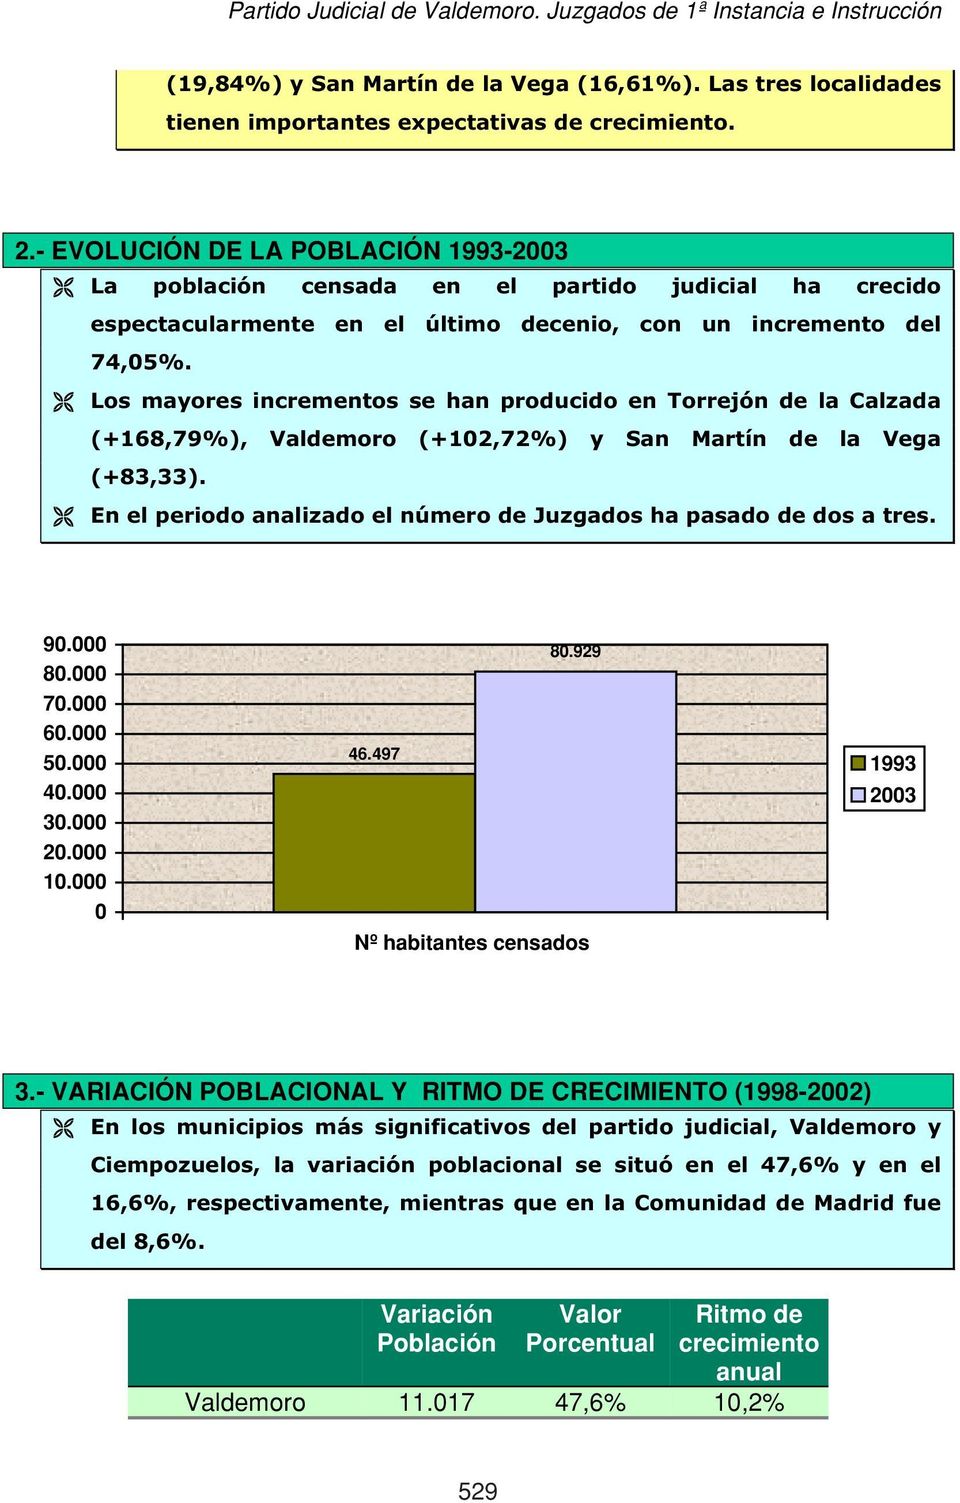 Los mayores incrementos se han producido en Torrejón de la Calzada (+168,79%), Valdemoro (+12,72%) y San Martín de la Vega (+83,33).